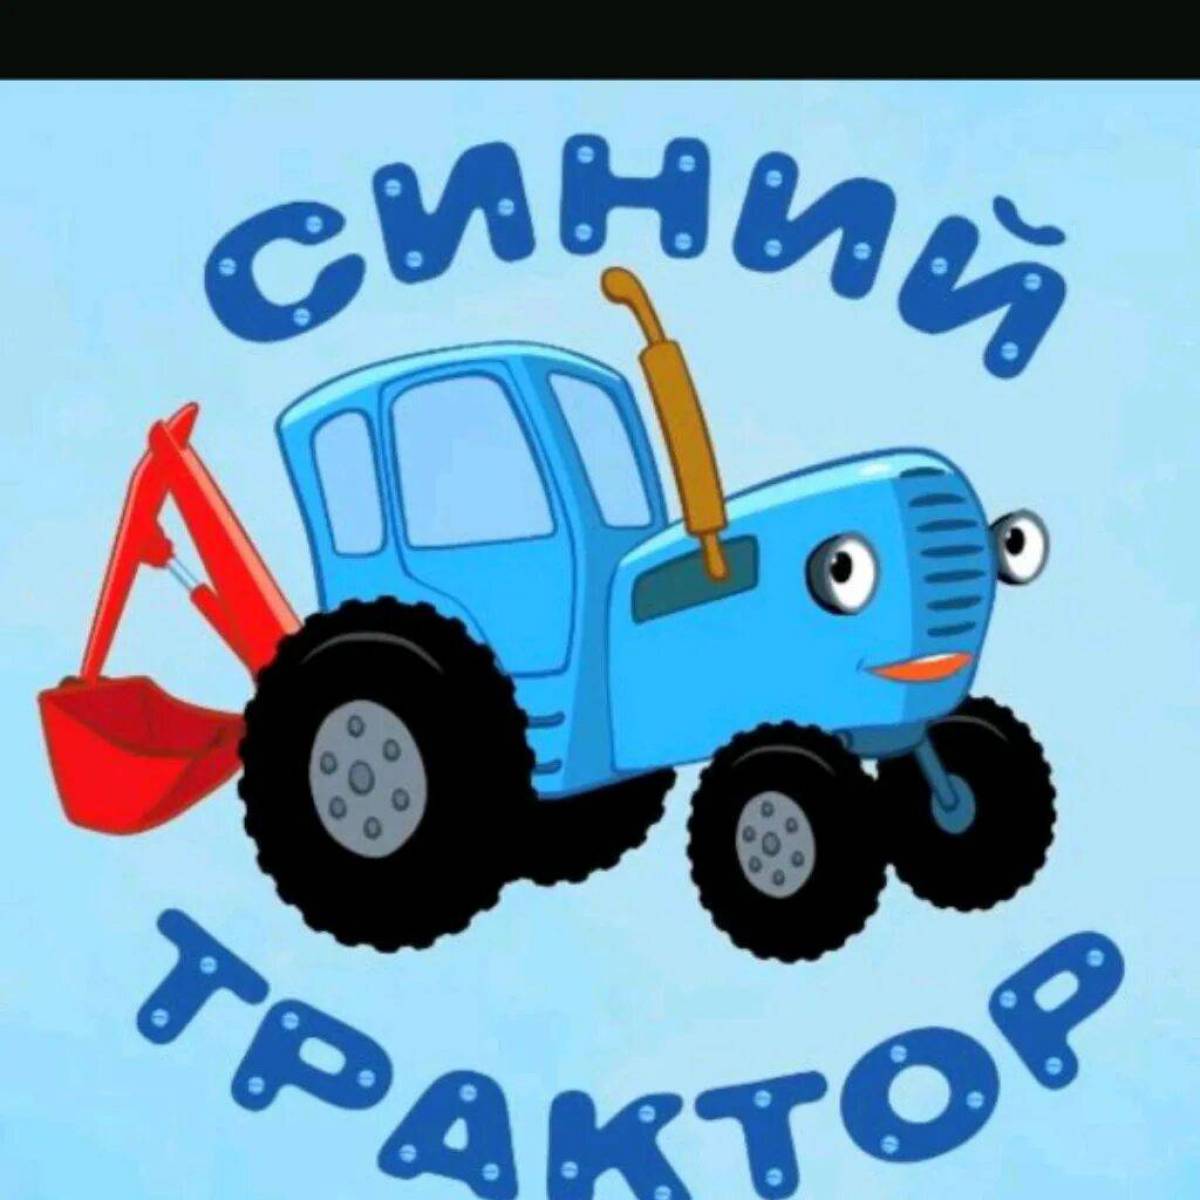 Синий трактор на мотив. Синий трактор трактор Гоша. Сини1 синий трактор. Габор синий трактор. Синий трактор для малышей ТРАКТОРЕНОК.